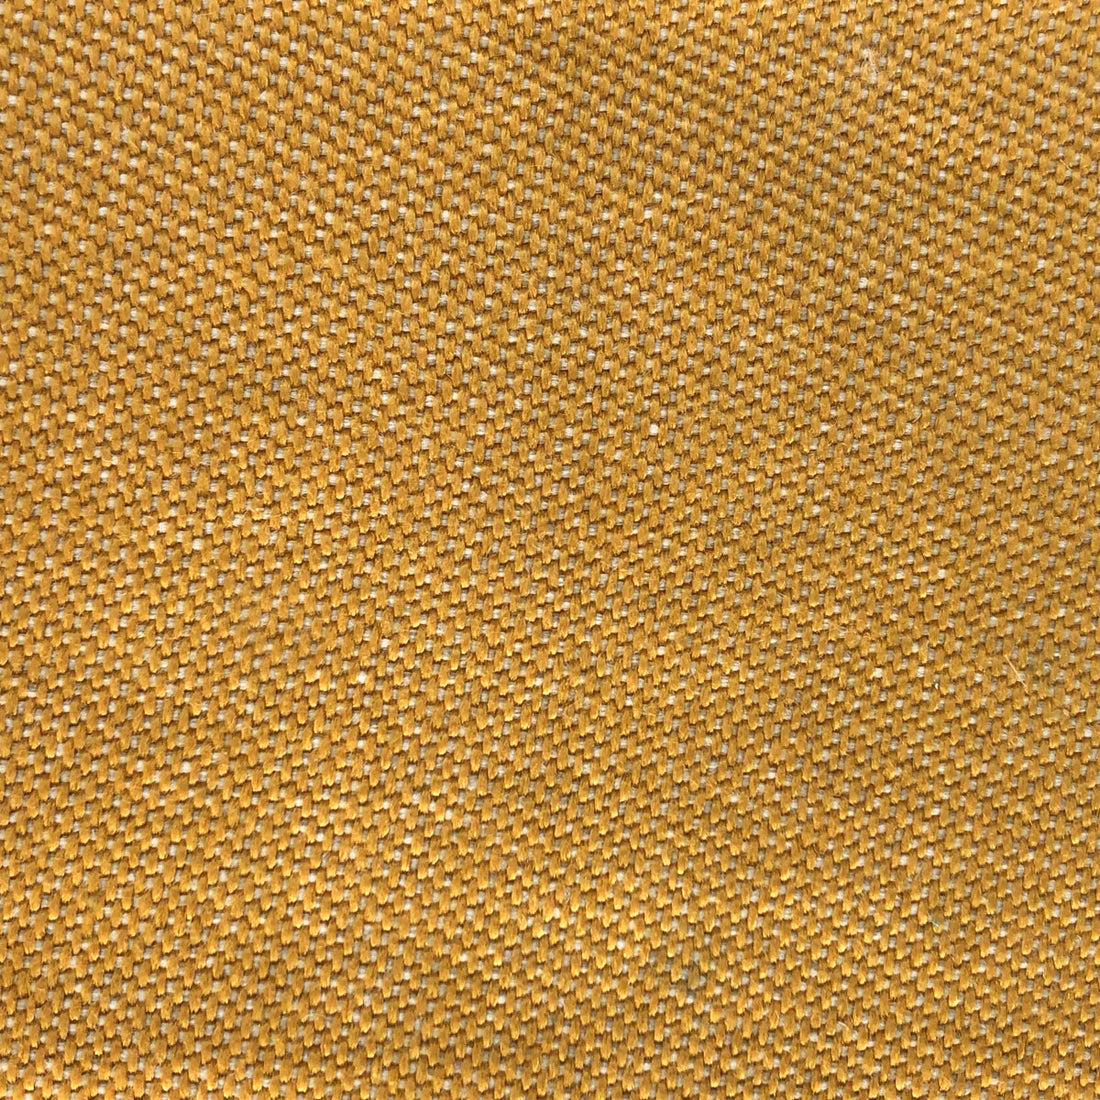 Max fabric in amarillo color - pattern LCT1067.003.0 - by Gaston y Daniela in the Lorenzo Castillo VI collection